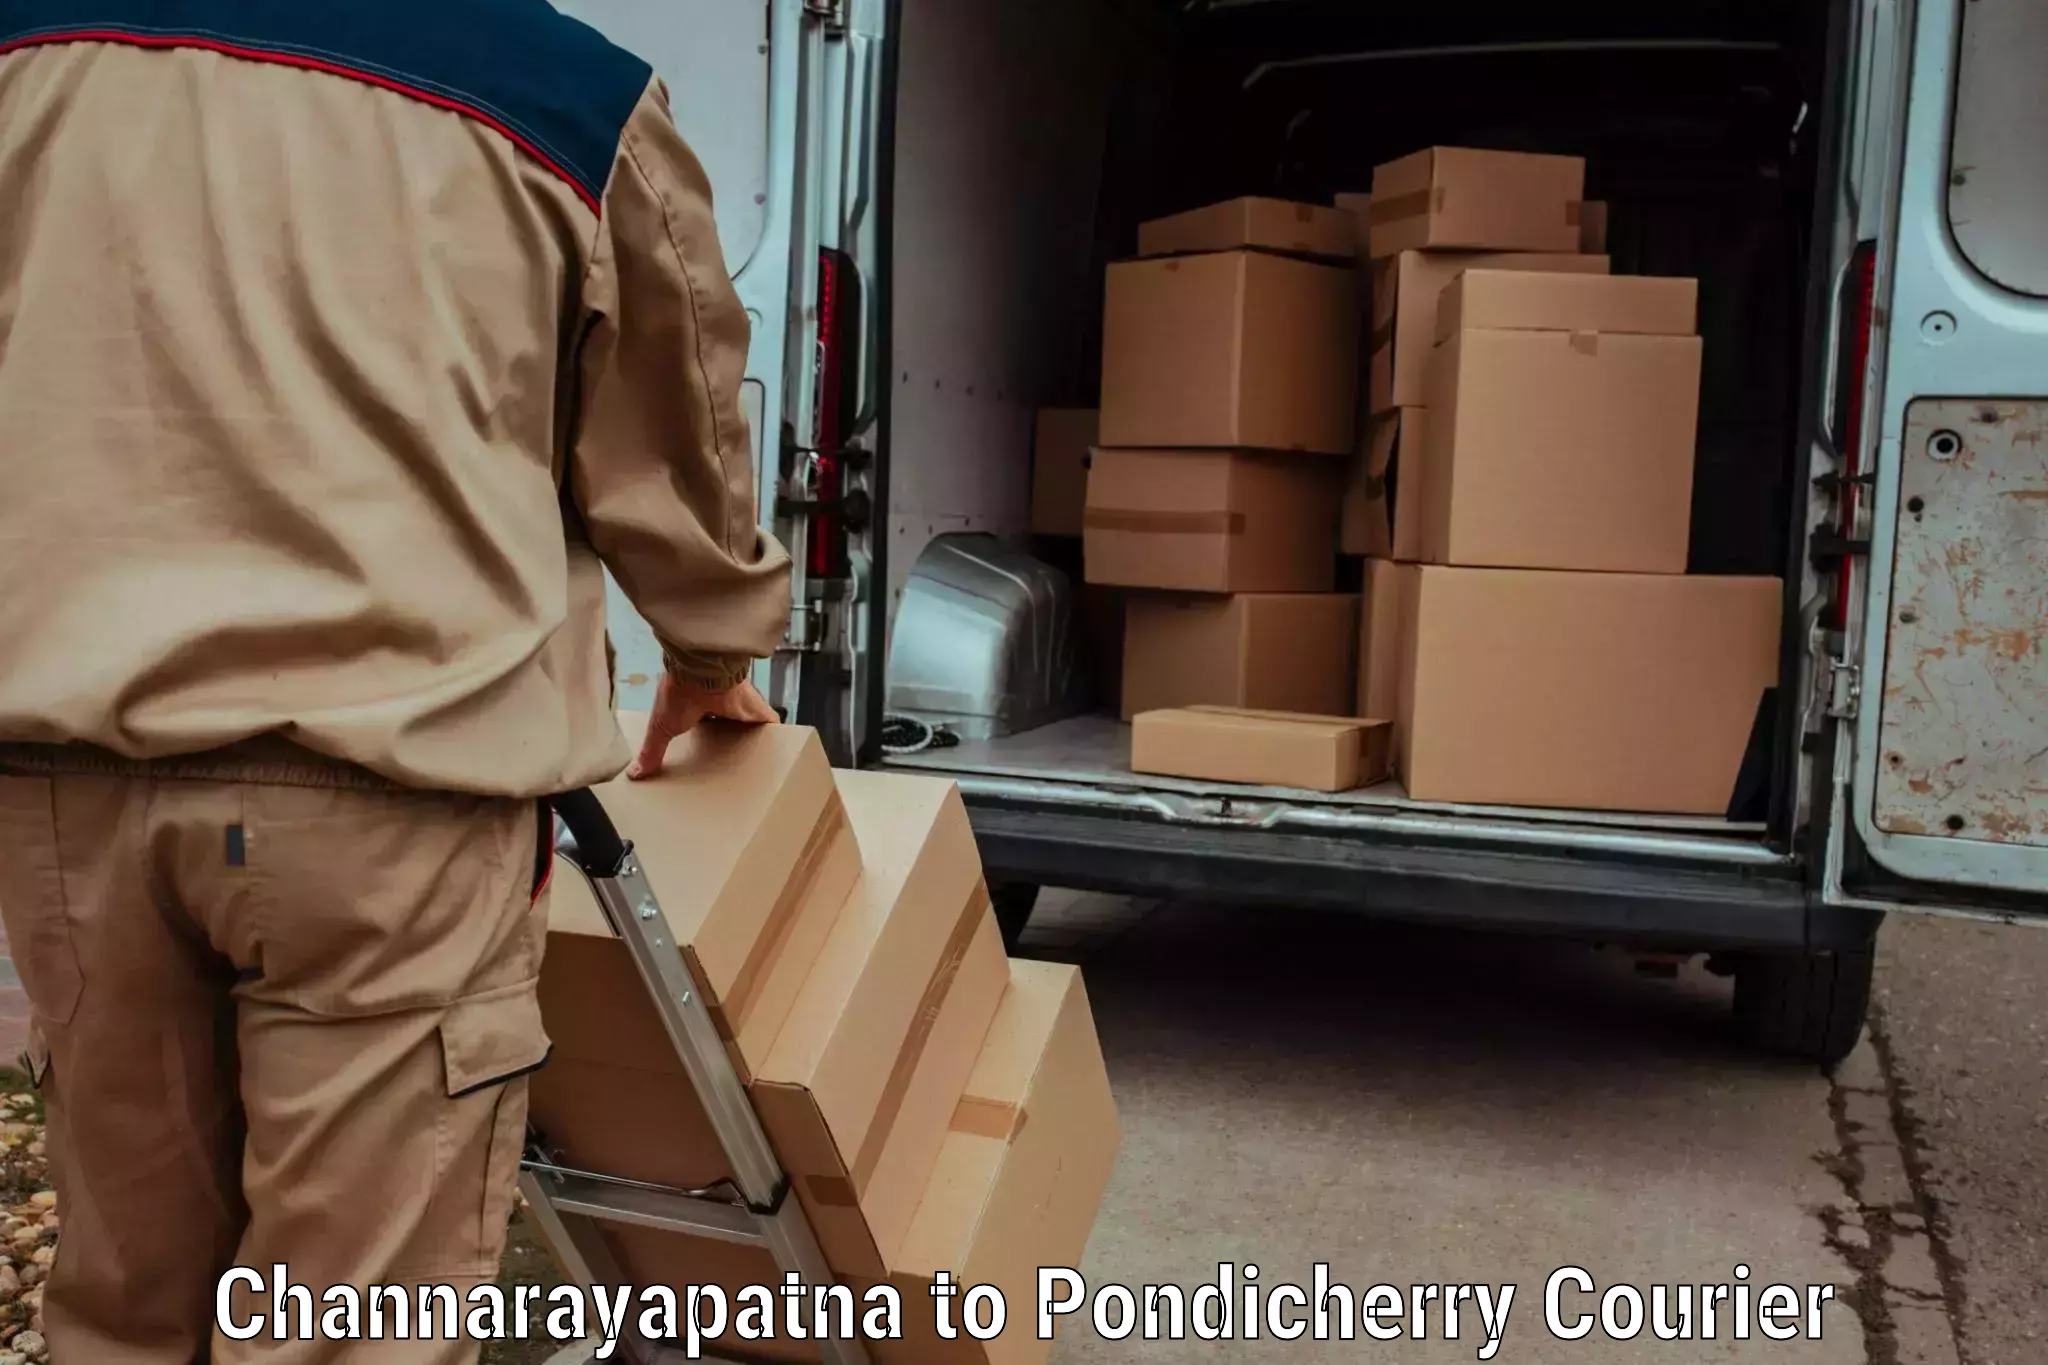 Express package delivery in Channarayapatna to Karaikal